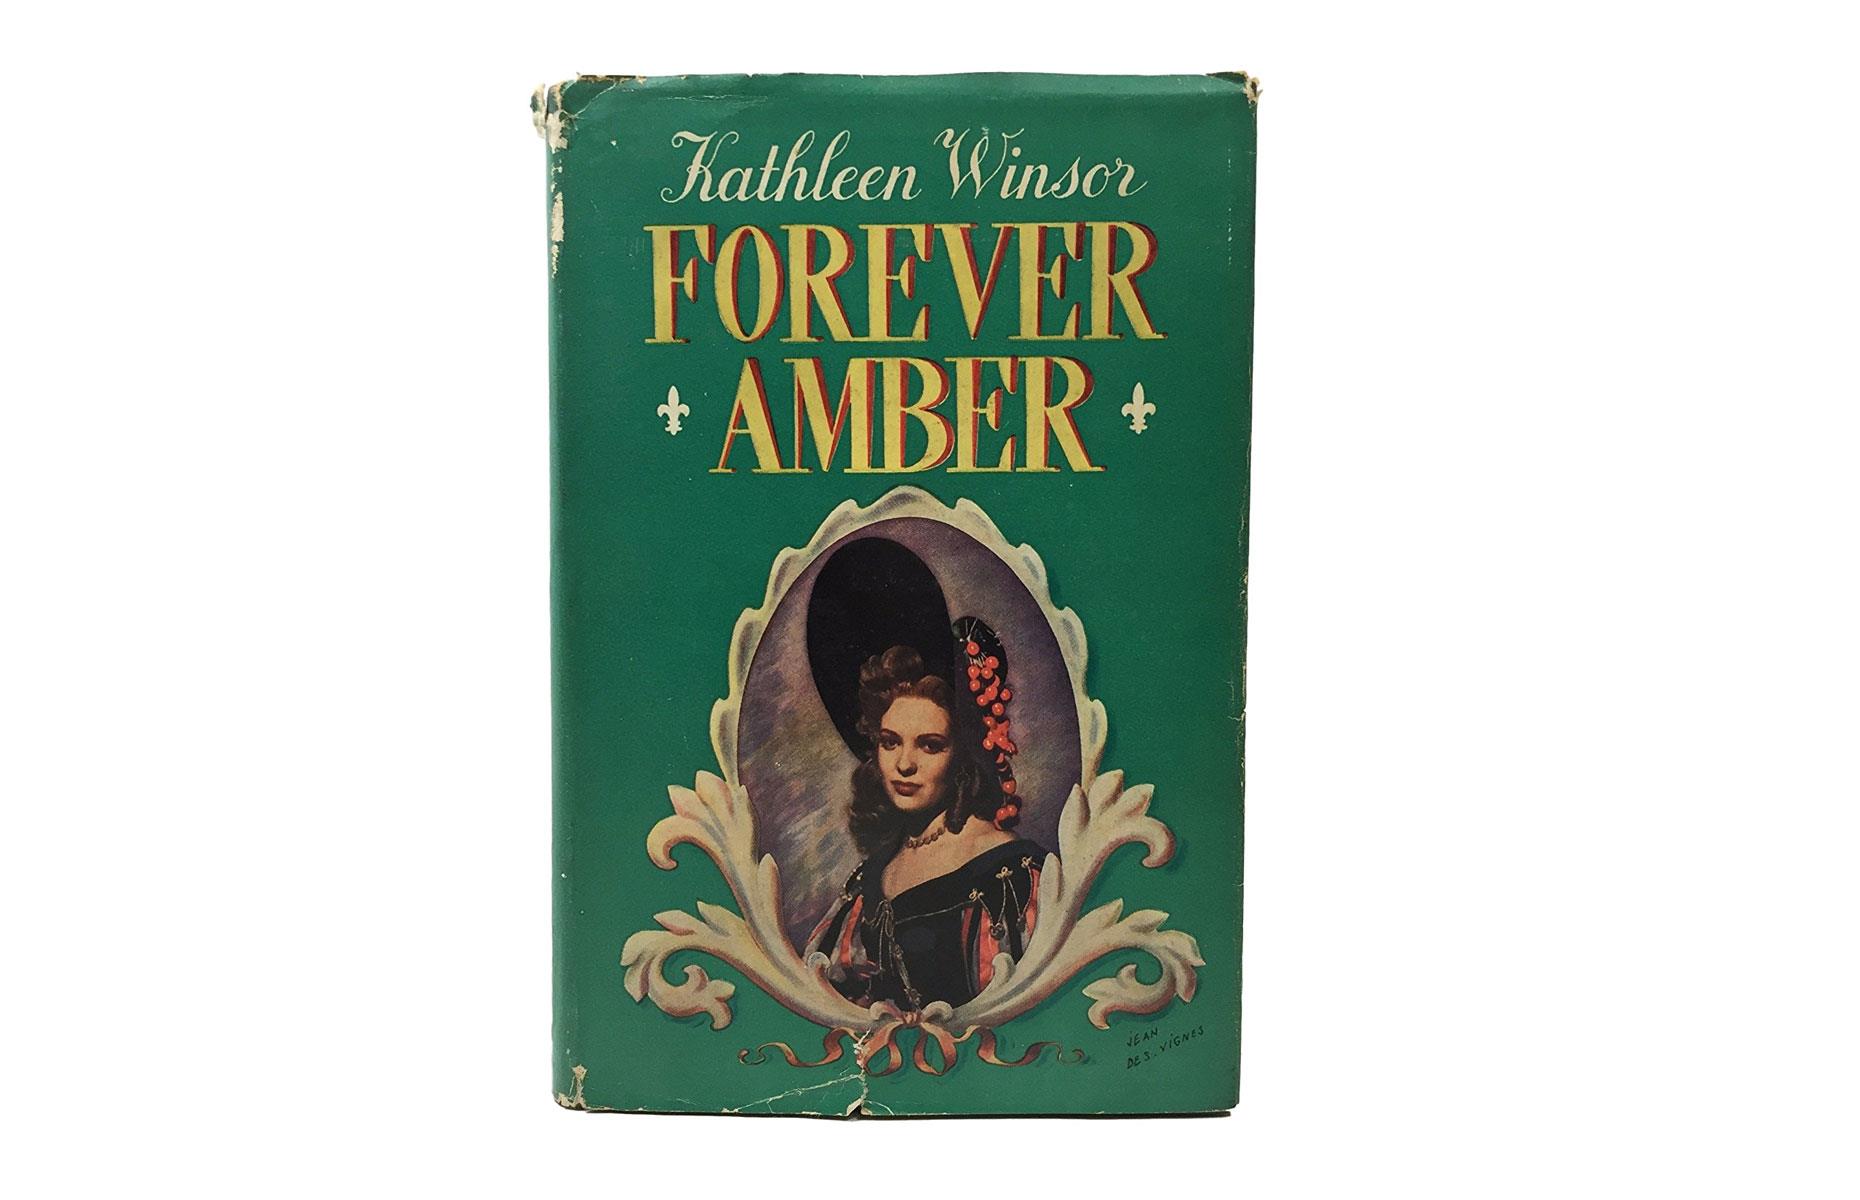 1940s: Forever Amber by Kathleen Winsor